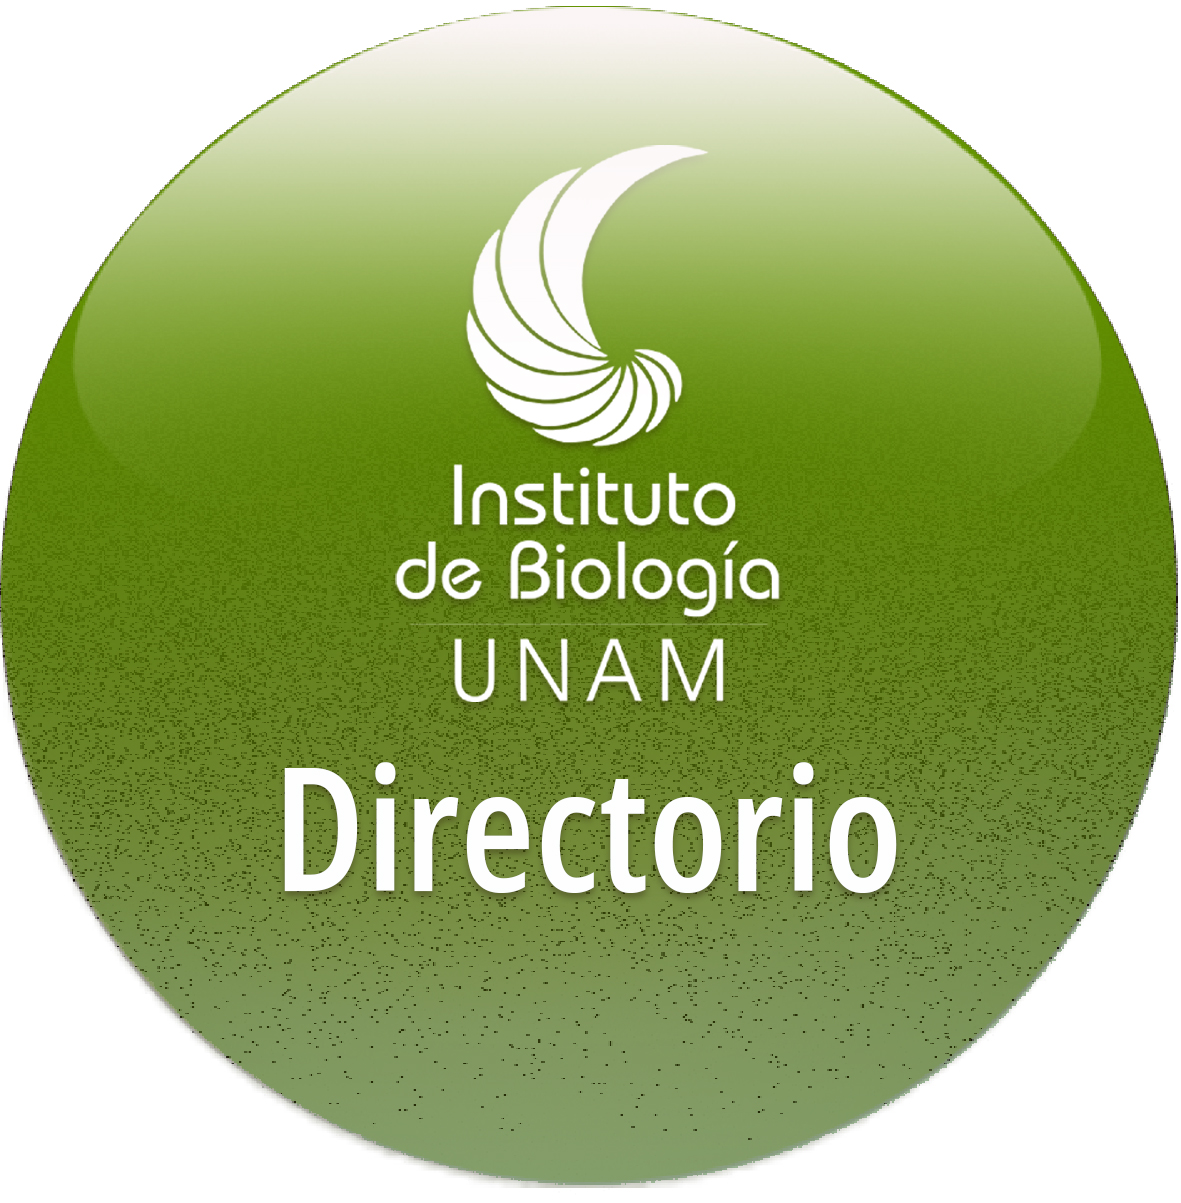 Directorio - Instituto de Biología, UNAM